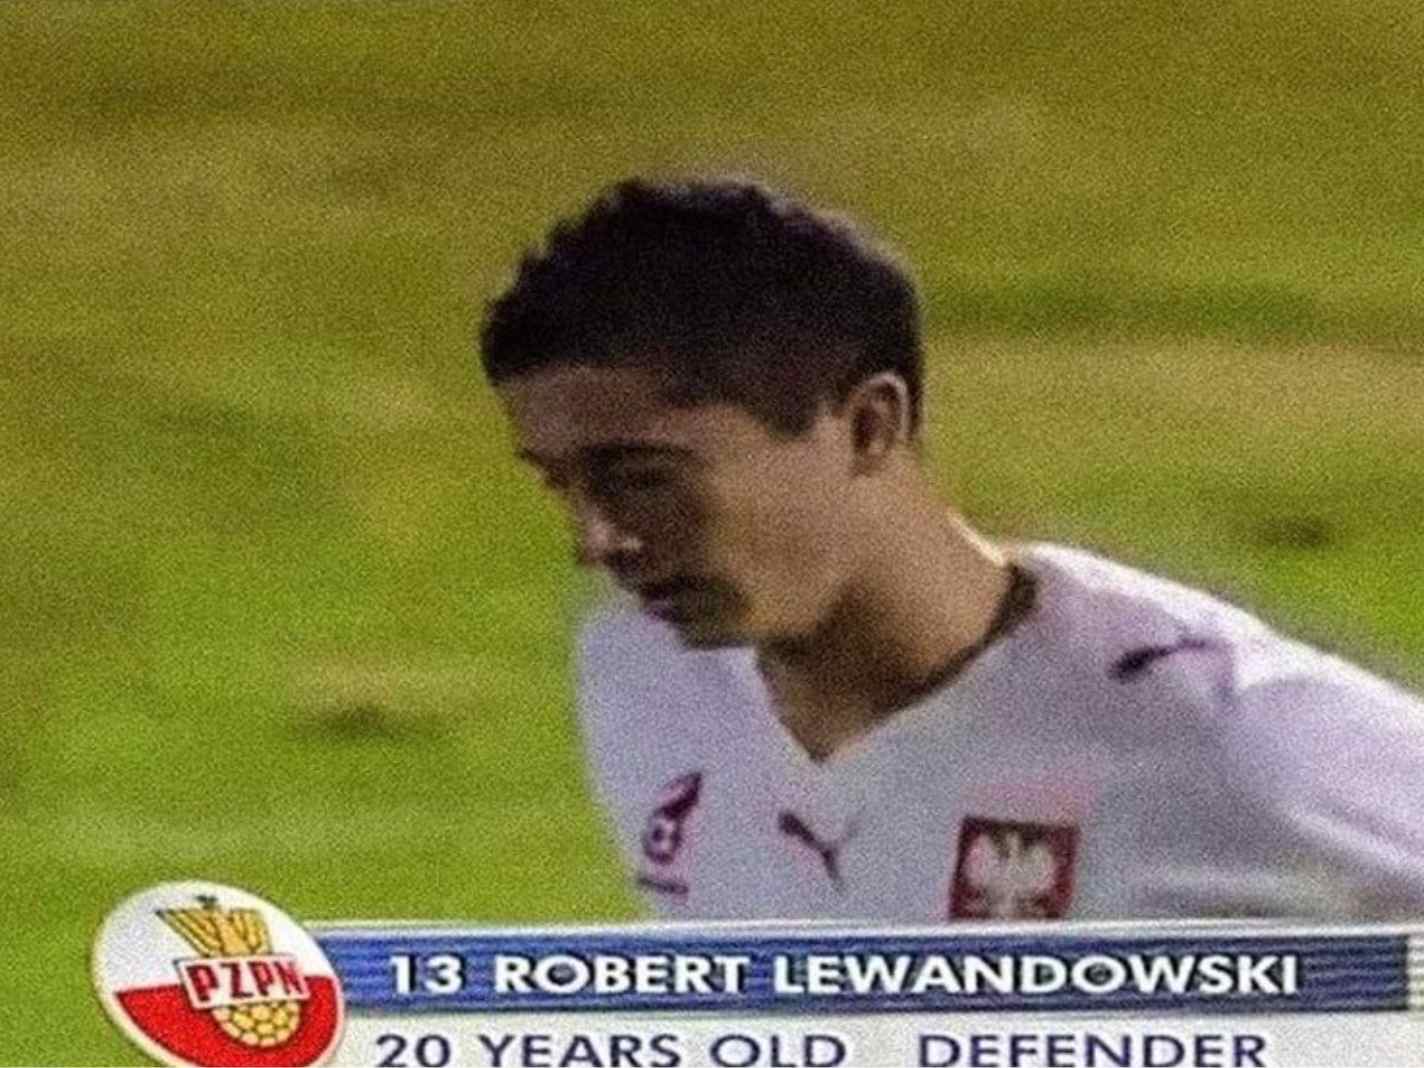 No, Robert Lewandowski Didn’t Start His Career as Defender